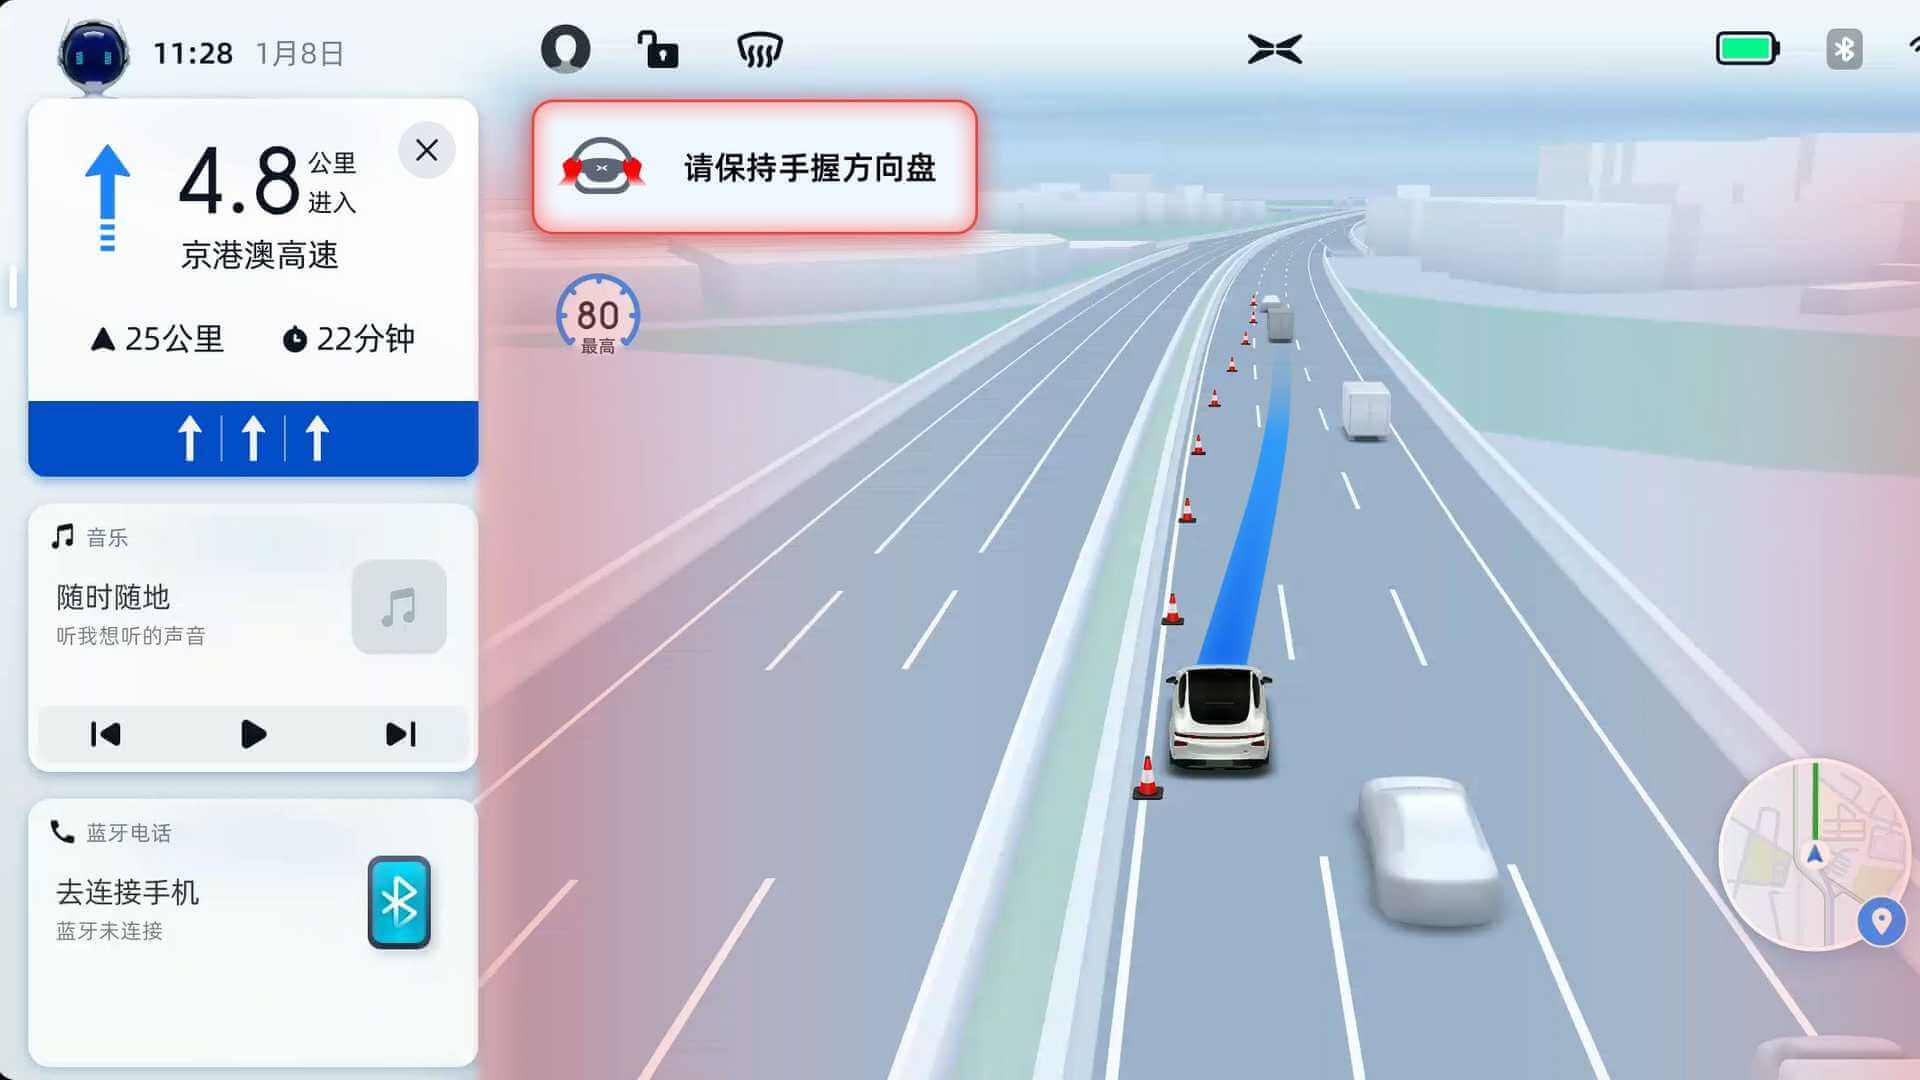 Китайский производитель электромобилей Xpeng бросает вызов Tesla и представляет функции автономного вождения по шоссе